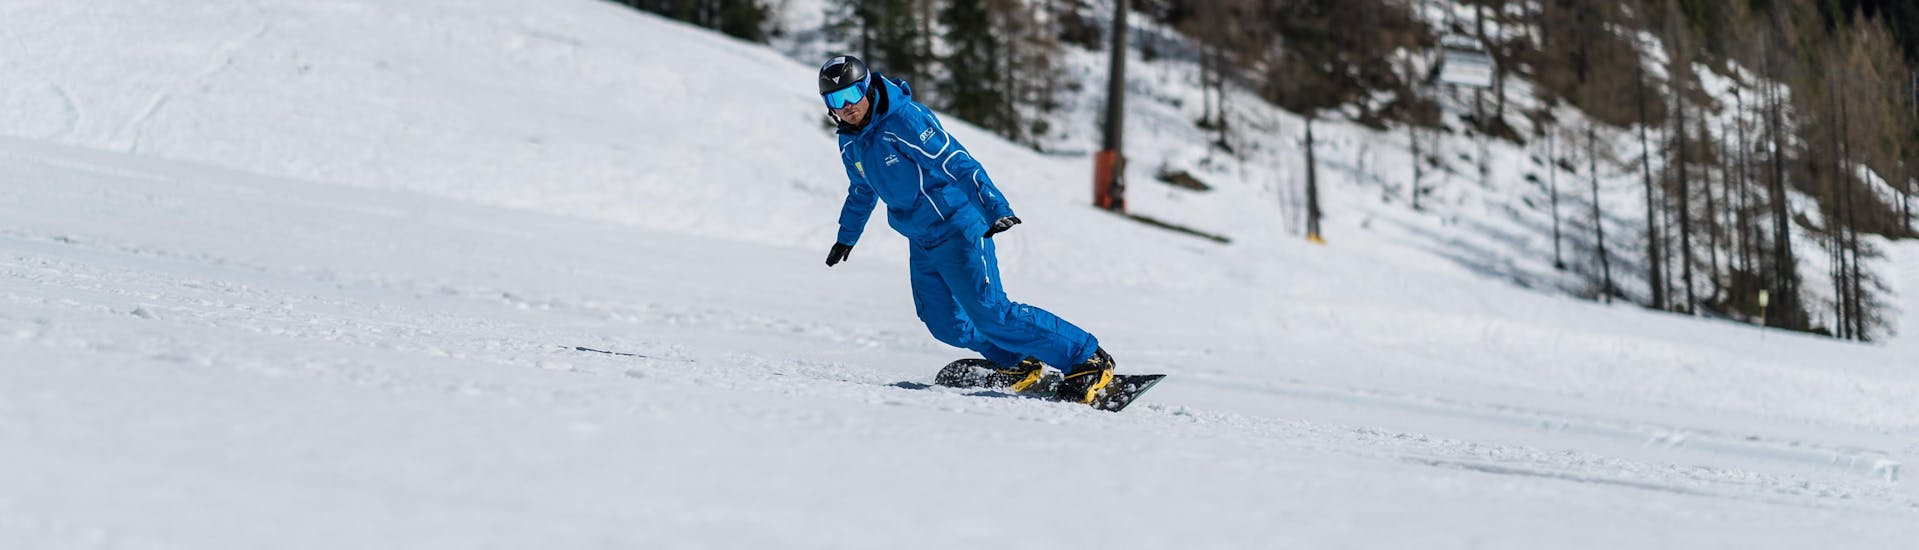 Lezioni private di Snowboard per tutti i livelli.